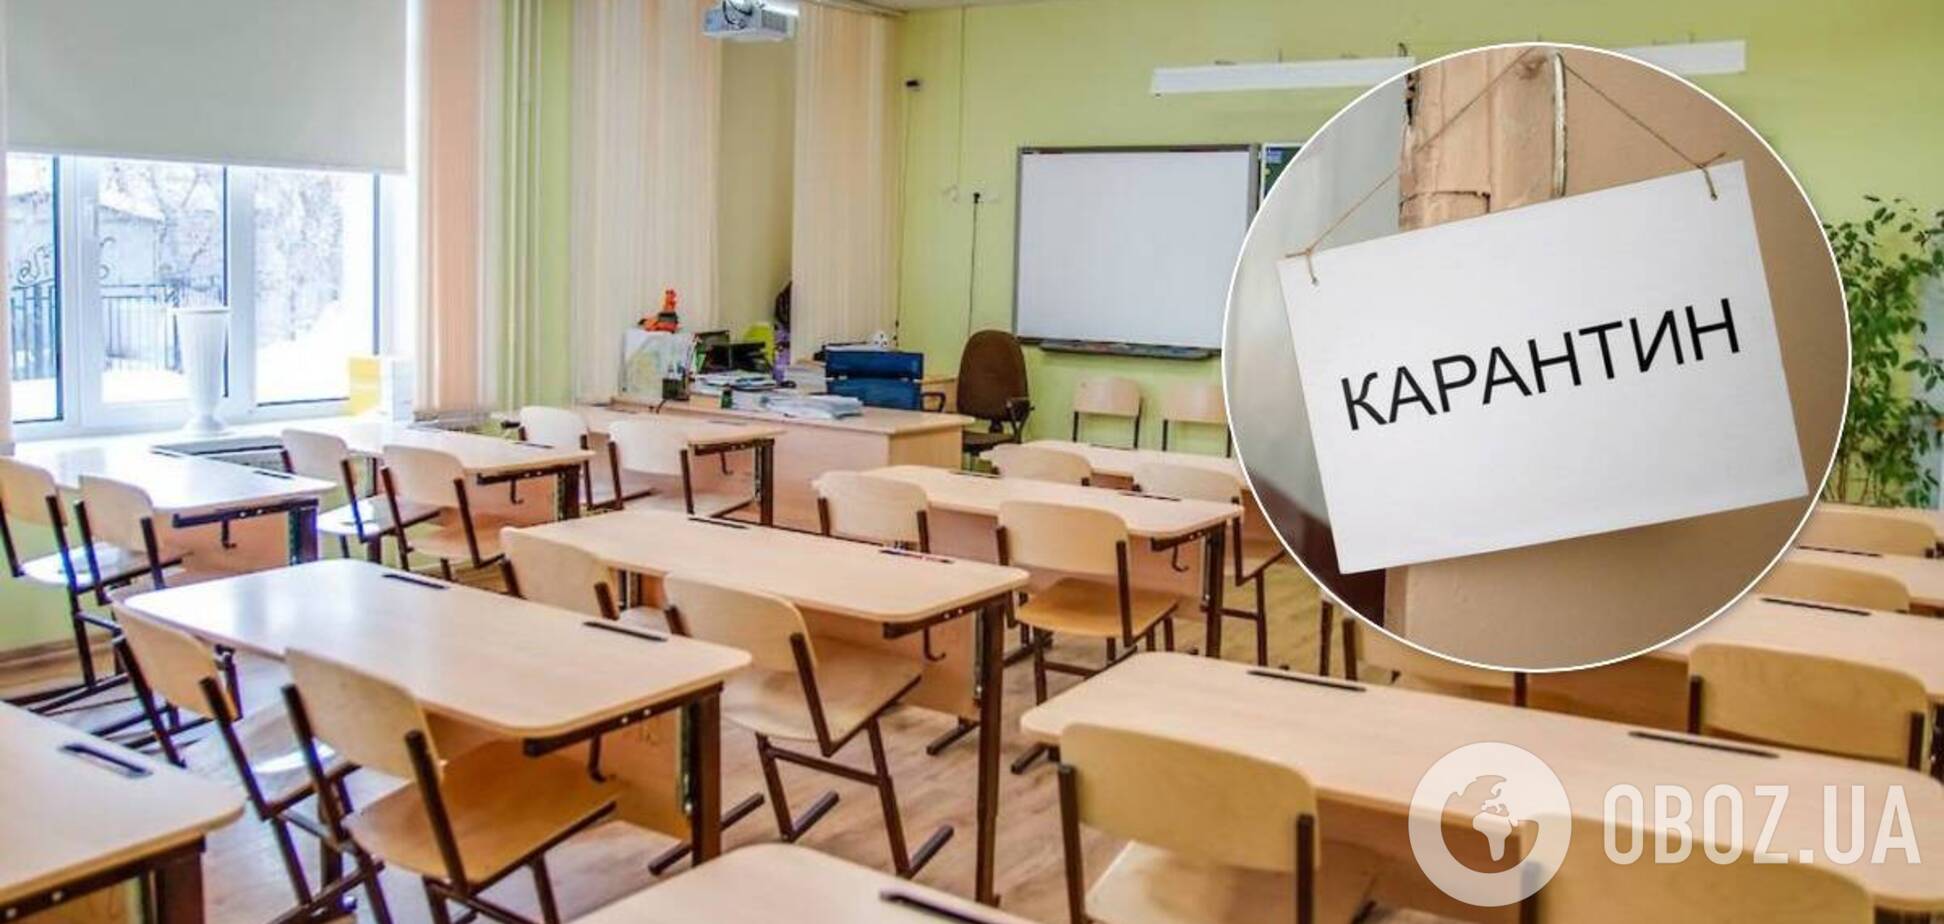 Дети в Украине пойдут в школы с 1 сентября: в Минздраве анонсировали новые правила